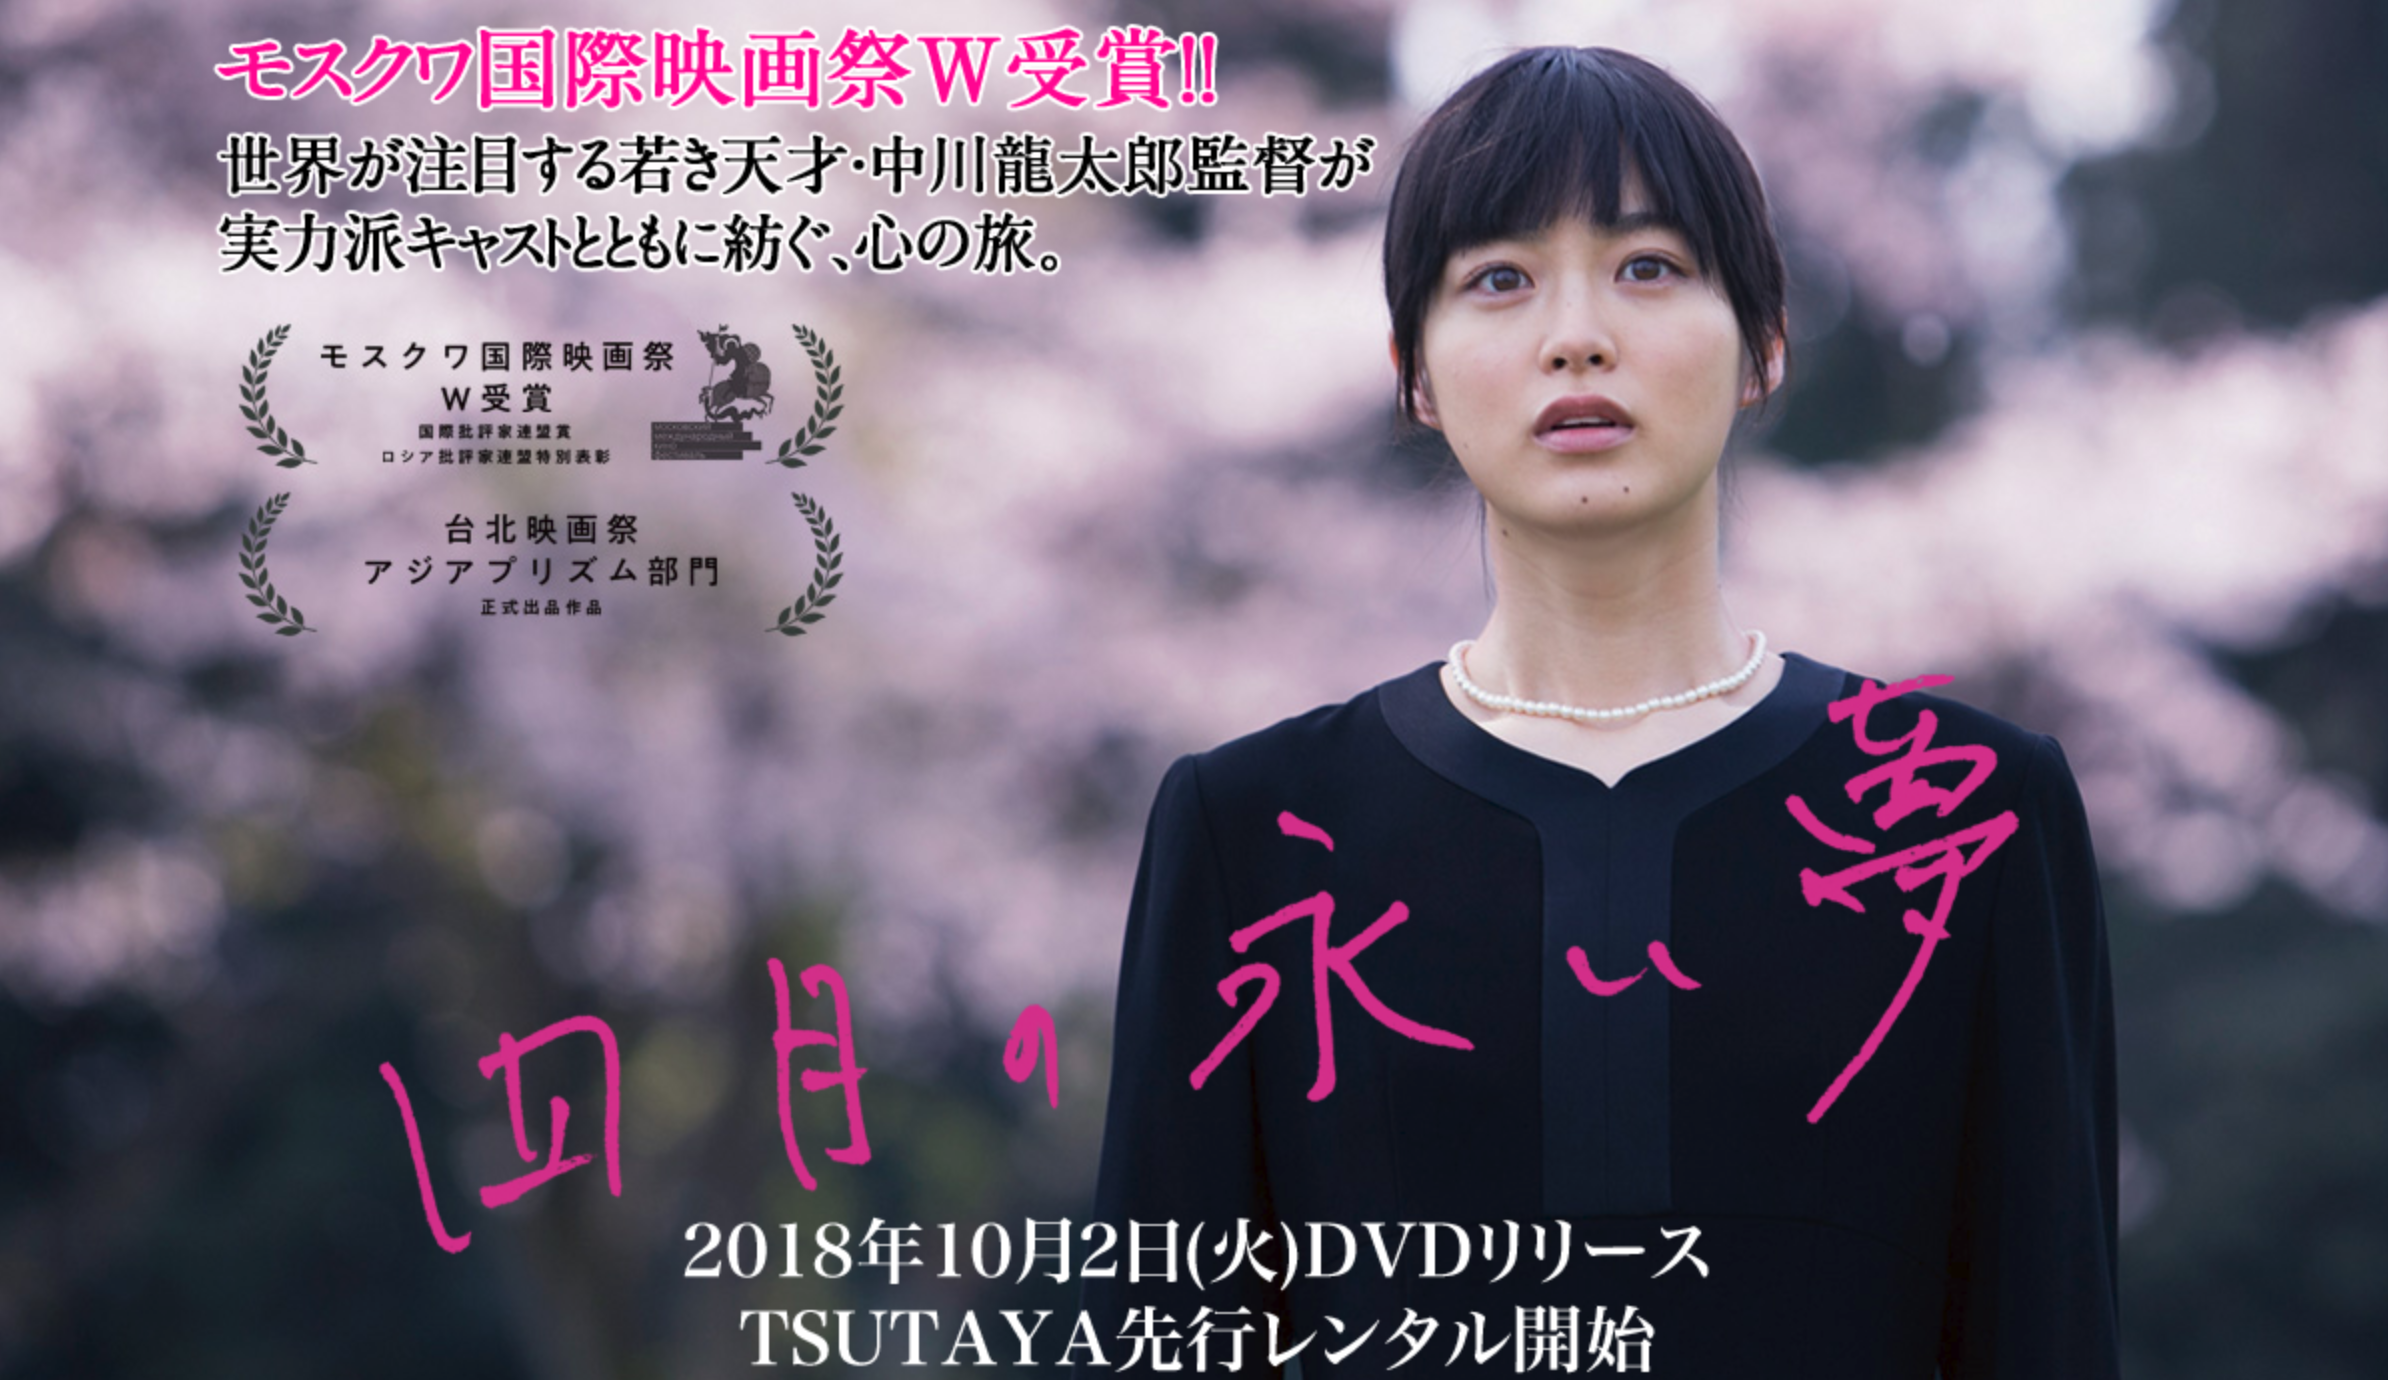 18年10月2日 火 四月の永い夢 Dvd発売 レンタル開始します Tokyo New Cinema Inc 映画 Cm制作 圧倒的世界品質